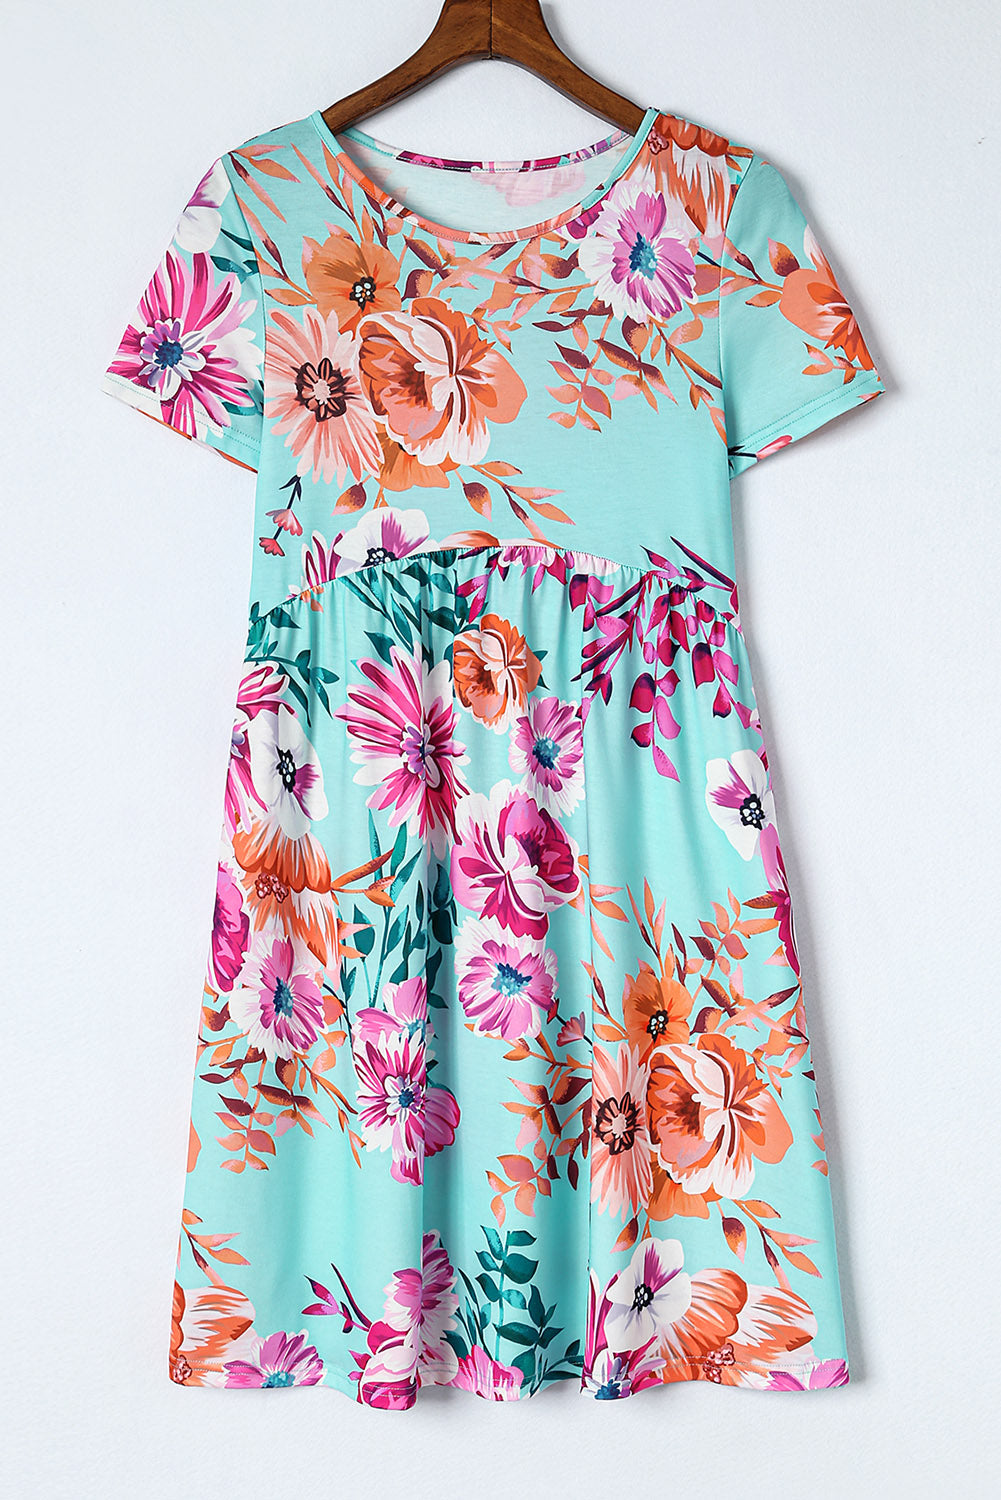 Sky Blue Short Sleeve High Waist Floral T-shirt Dress